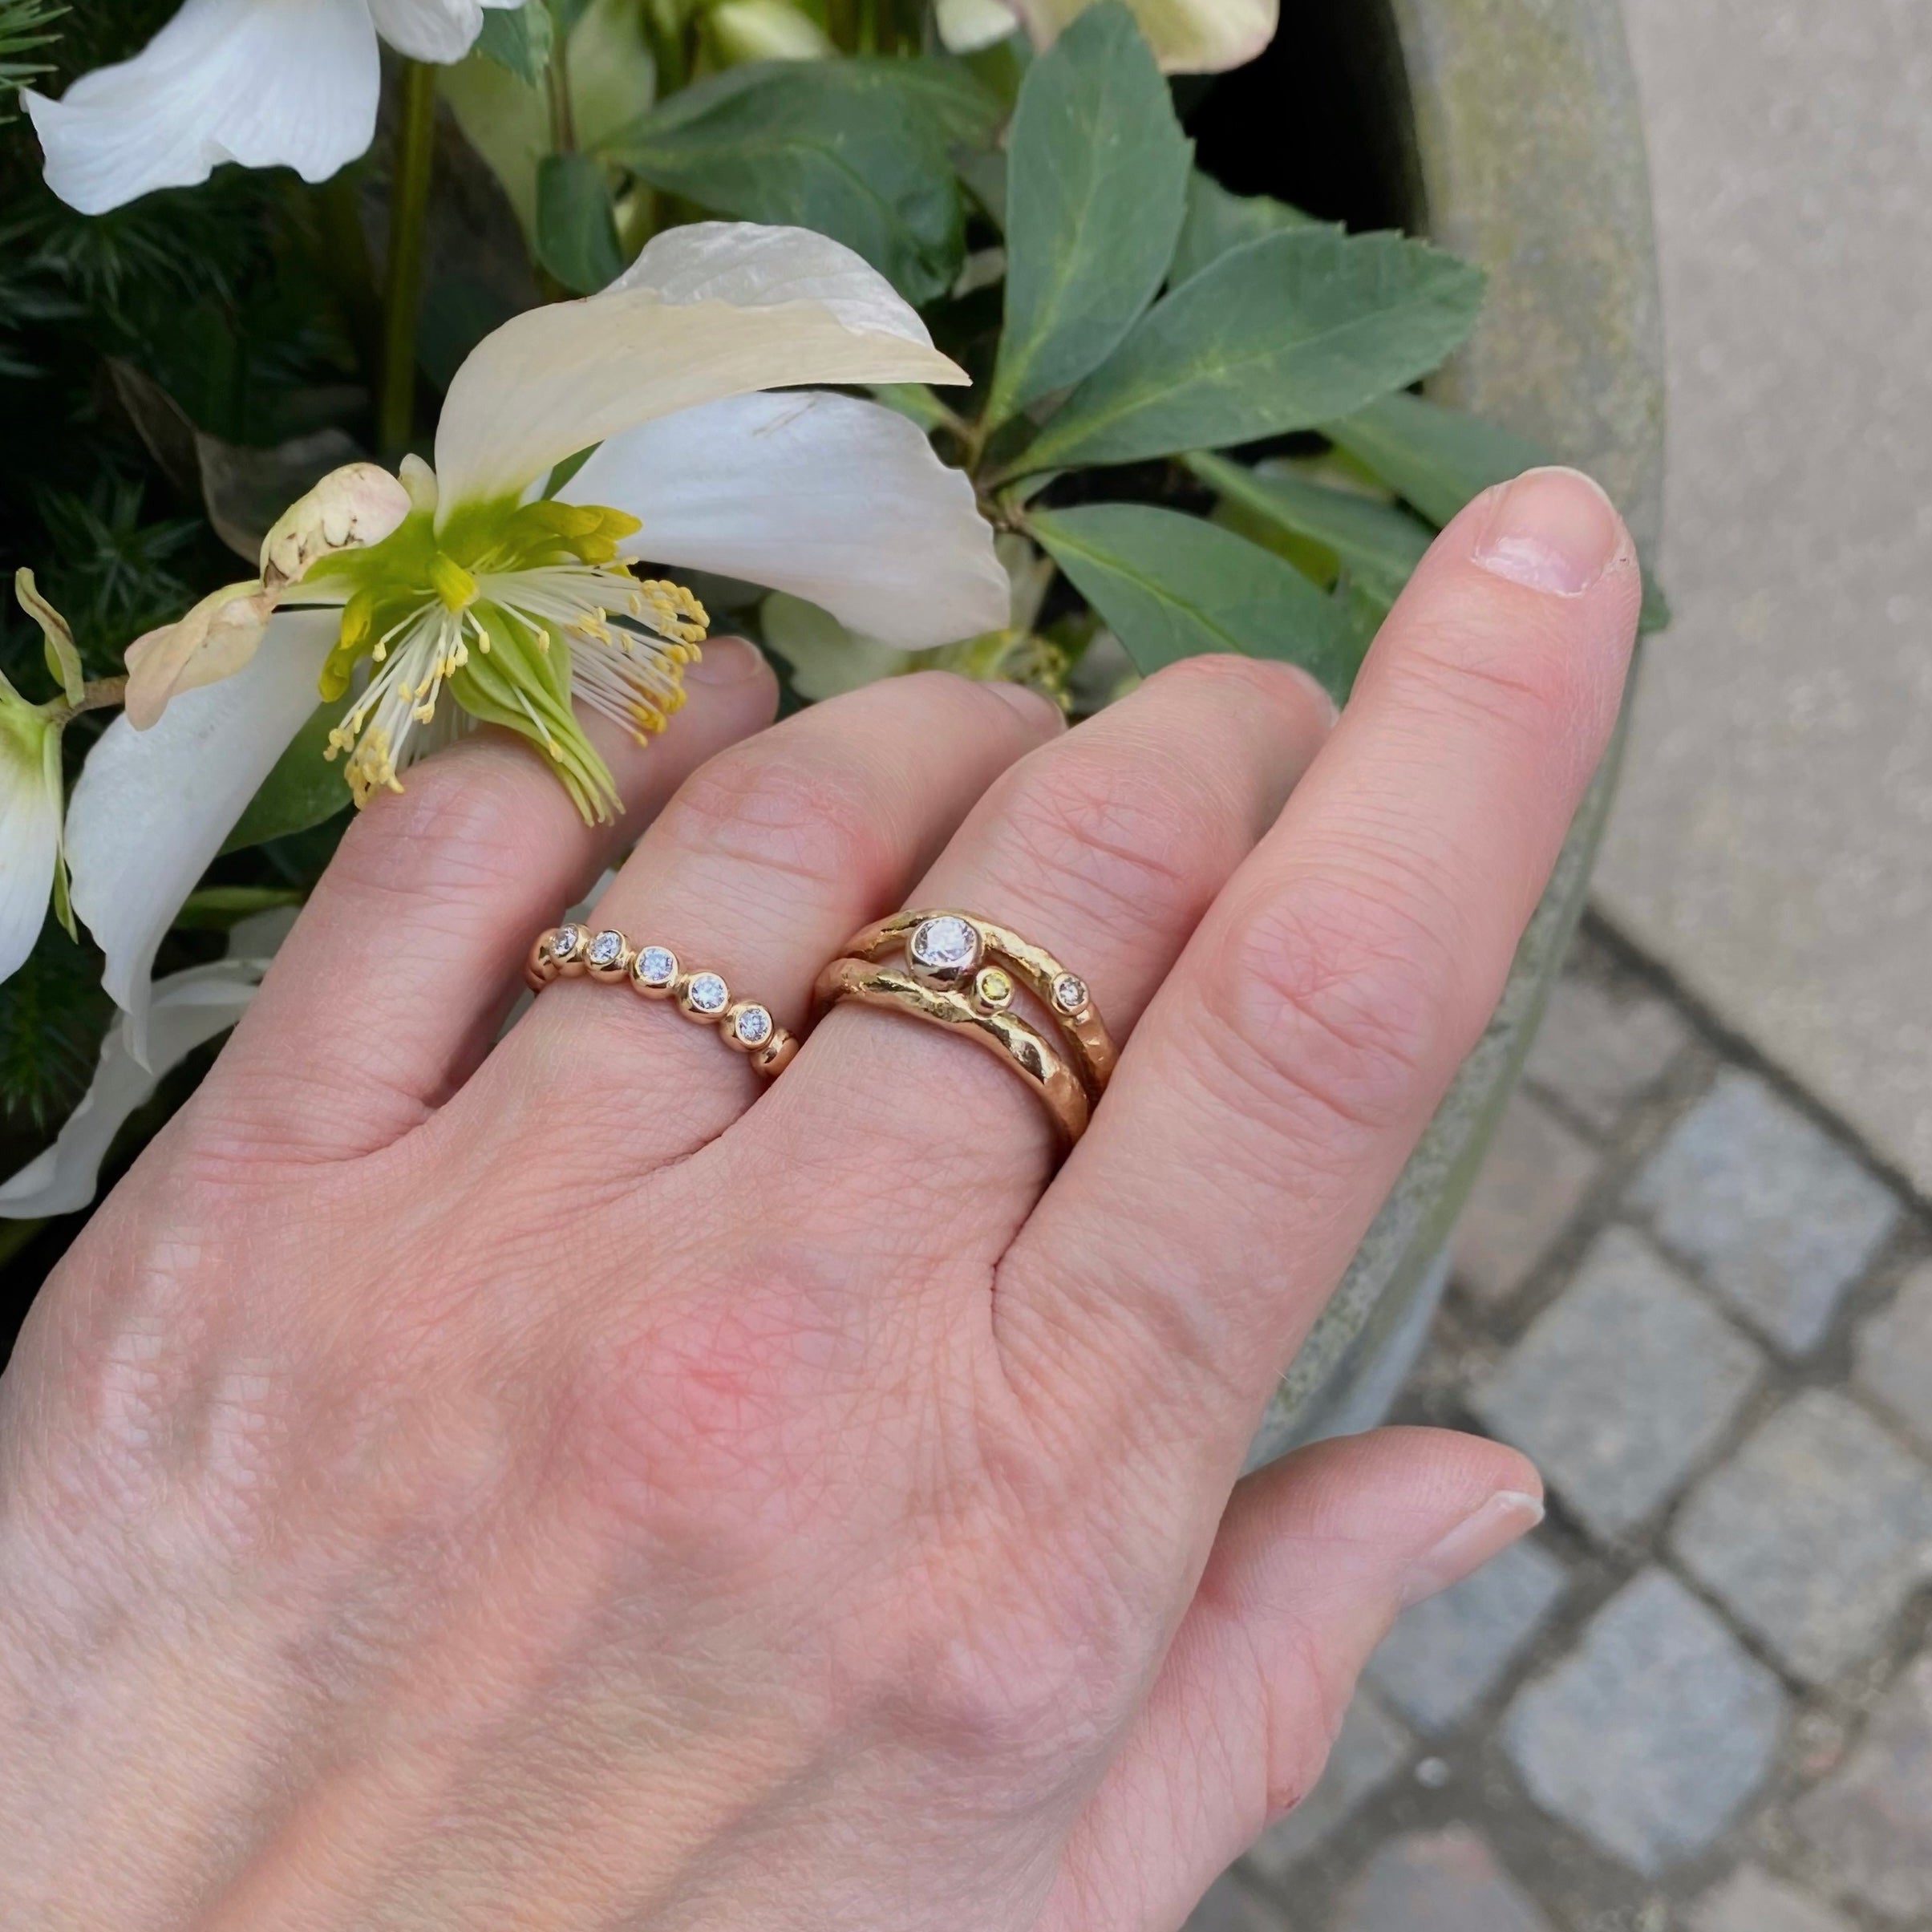 Smuk kugle ring i guld, med 5 stk diamanter - designet af guldsmed Maiken Pade